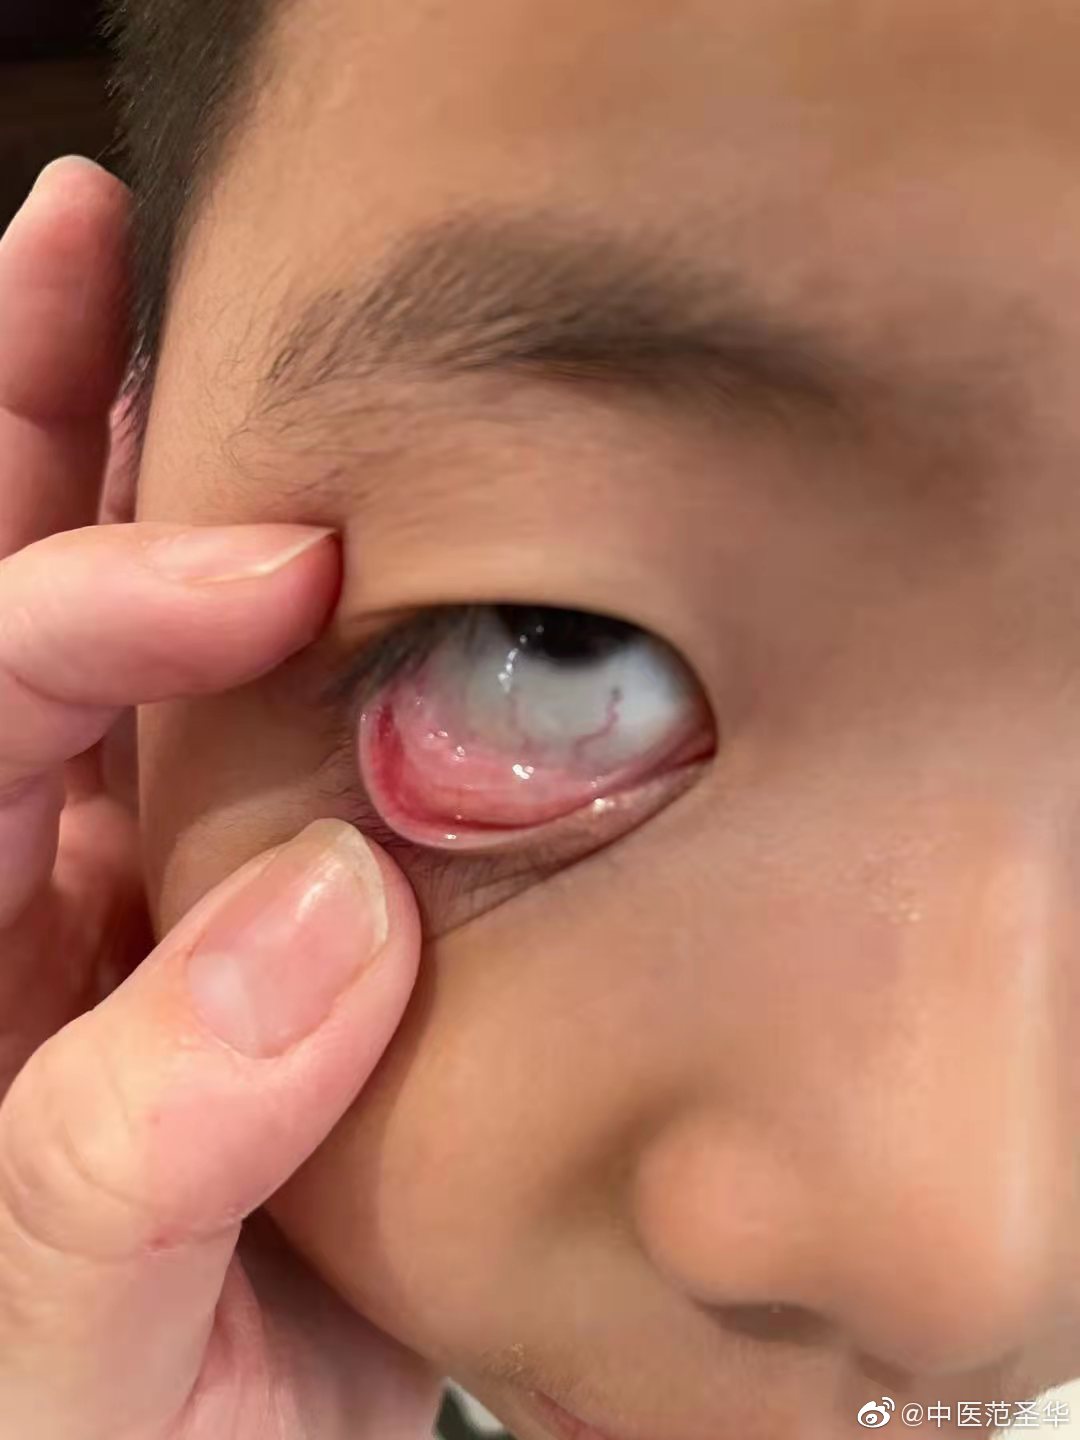 很早之前,治疗这位小朋友的眼睑结膜炎,眼睑发红,眼睛酸涩